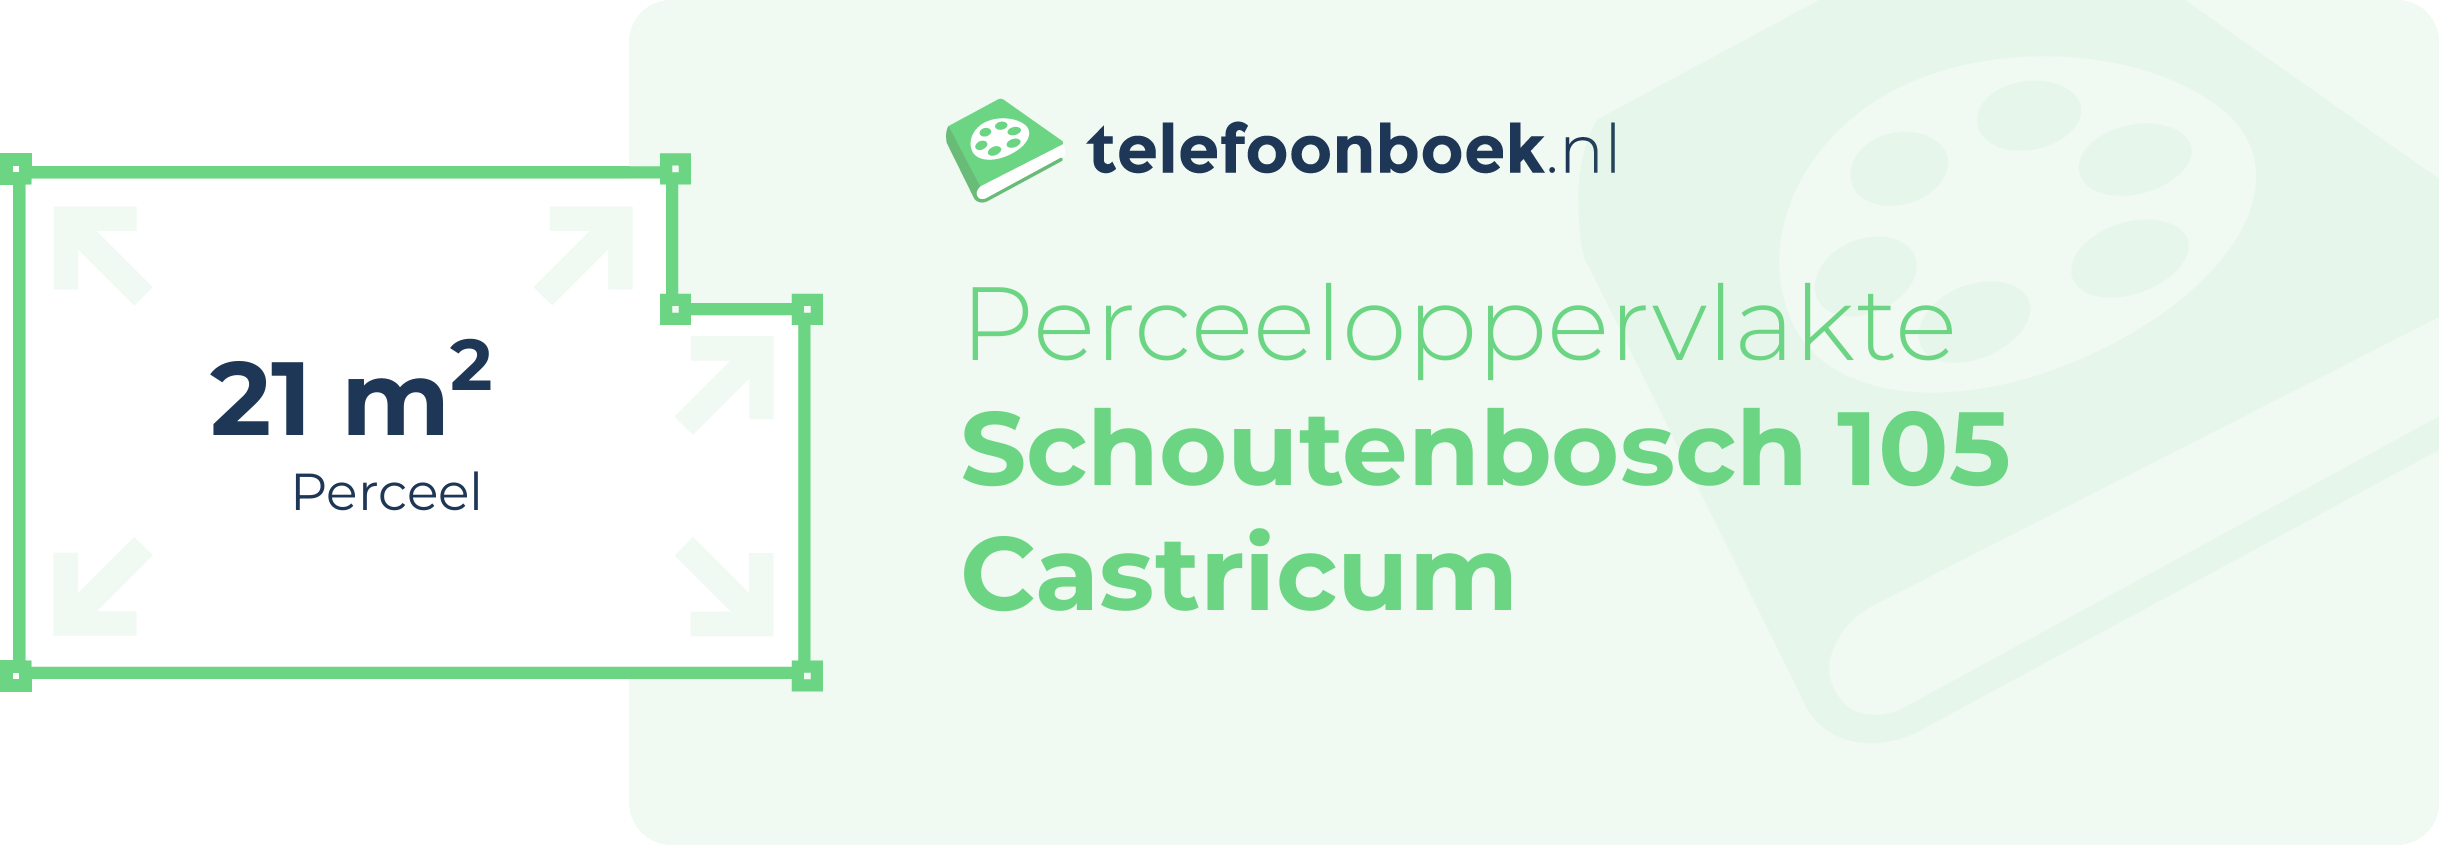 Perceeloppervlakte Schoutenbosch 105 Castricum